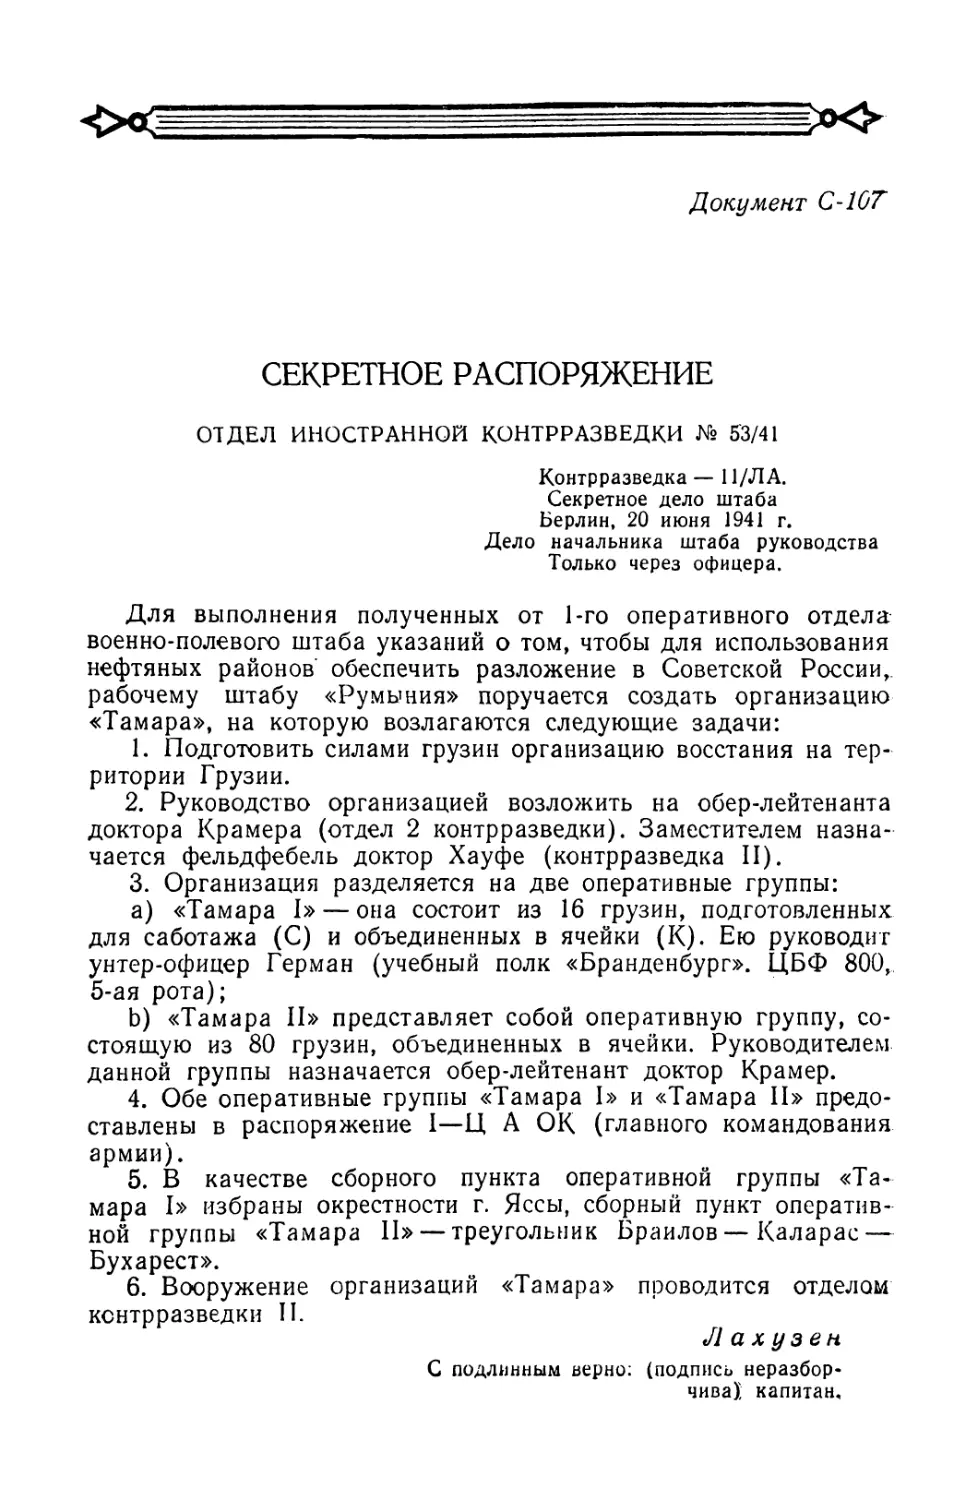 Секретное распоряжение начальника отдела иностранной контрразведки Эрвина Лахузена от 20 июня 1941 г. об организации восстания в Грузии